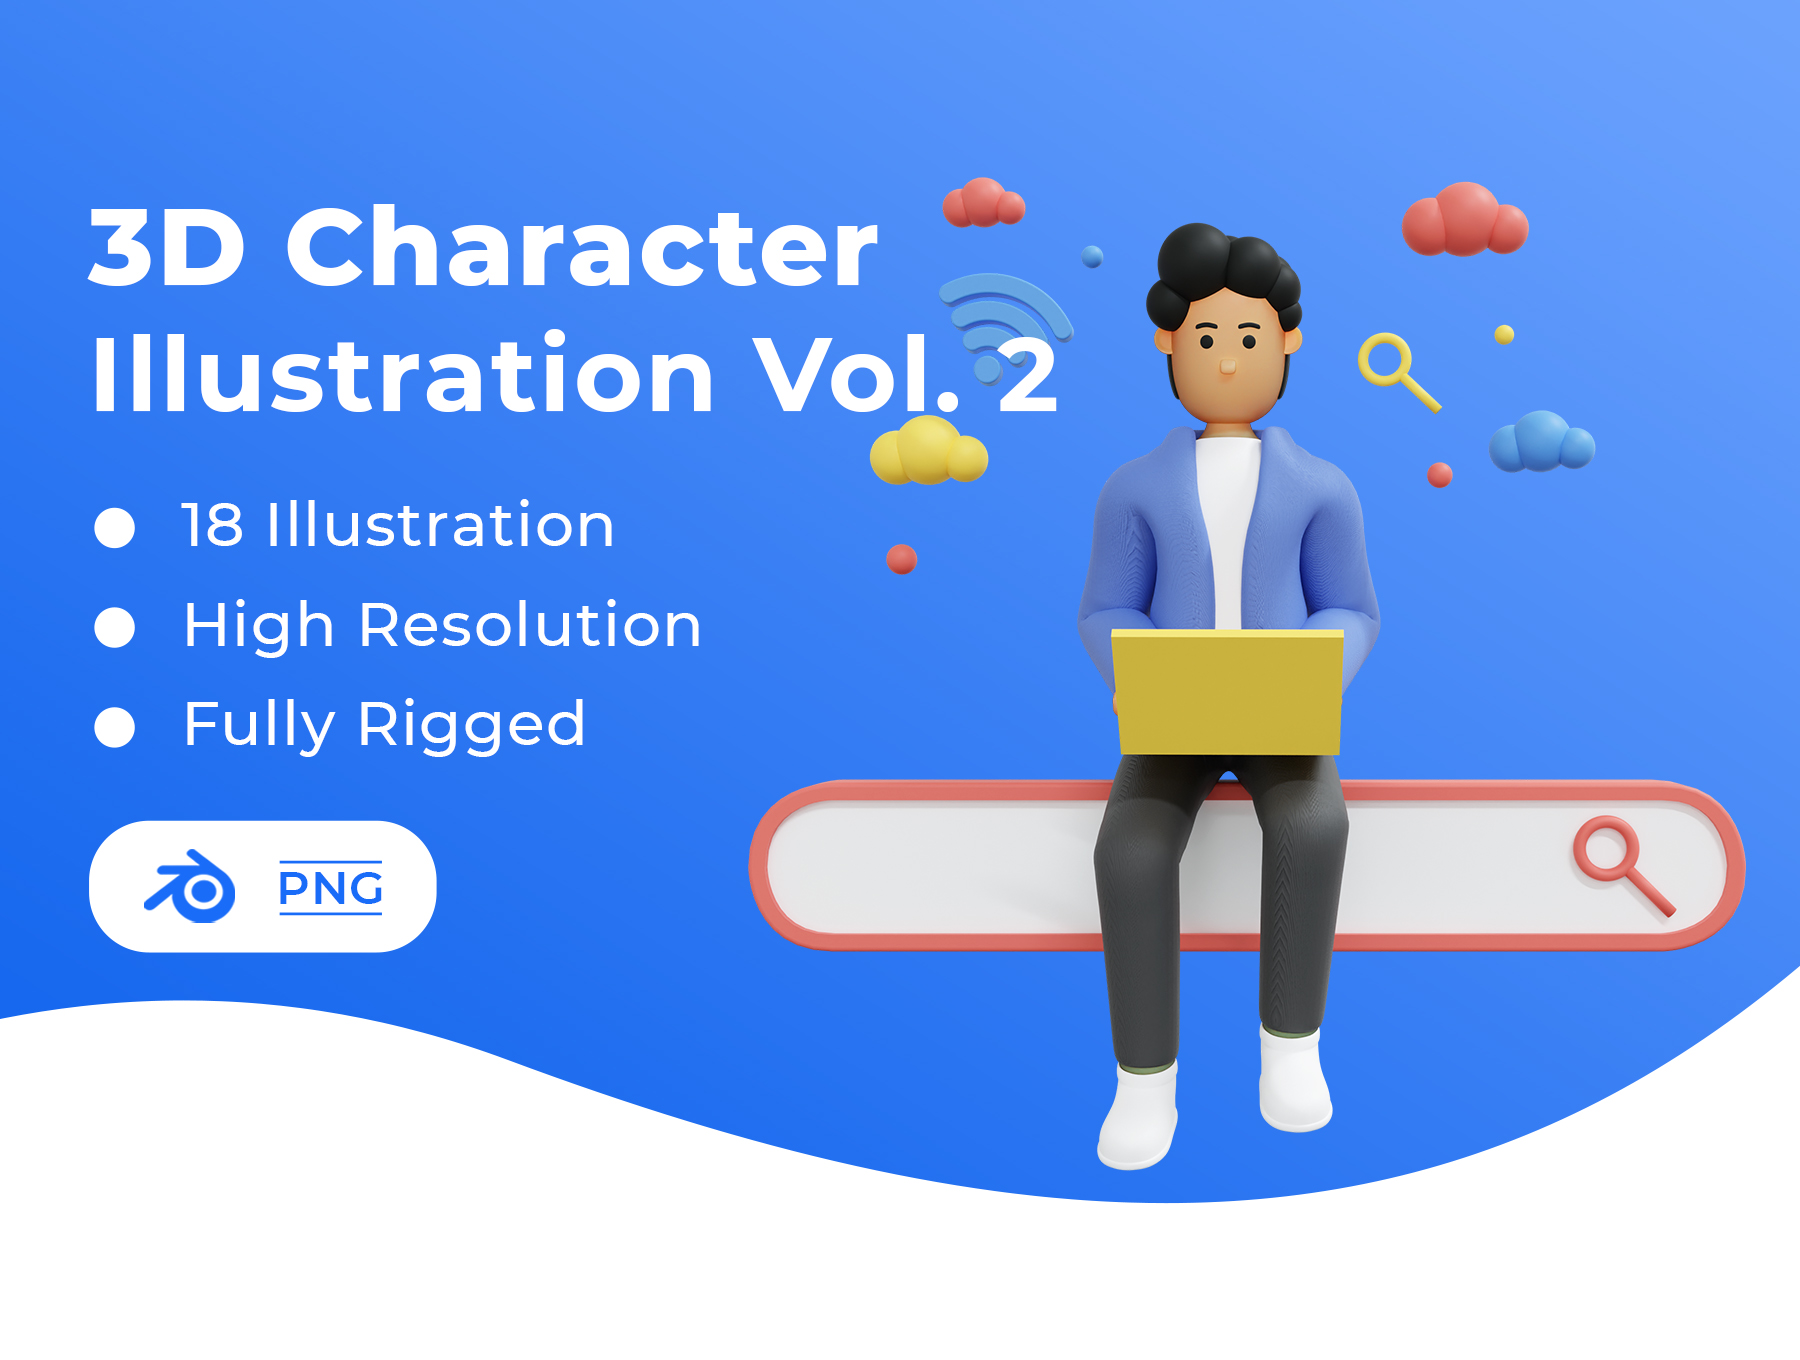 01 人物办公互联网相关3D模型素材 3D Character illustration Vol. 2 01